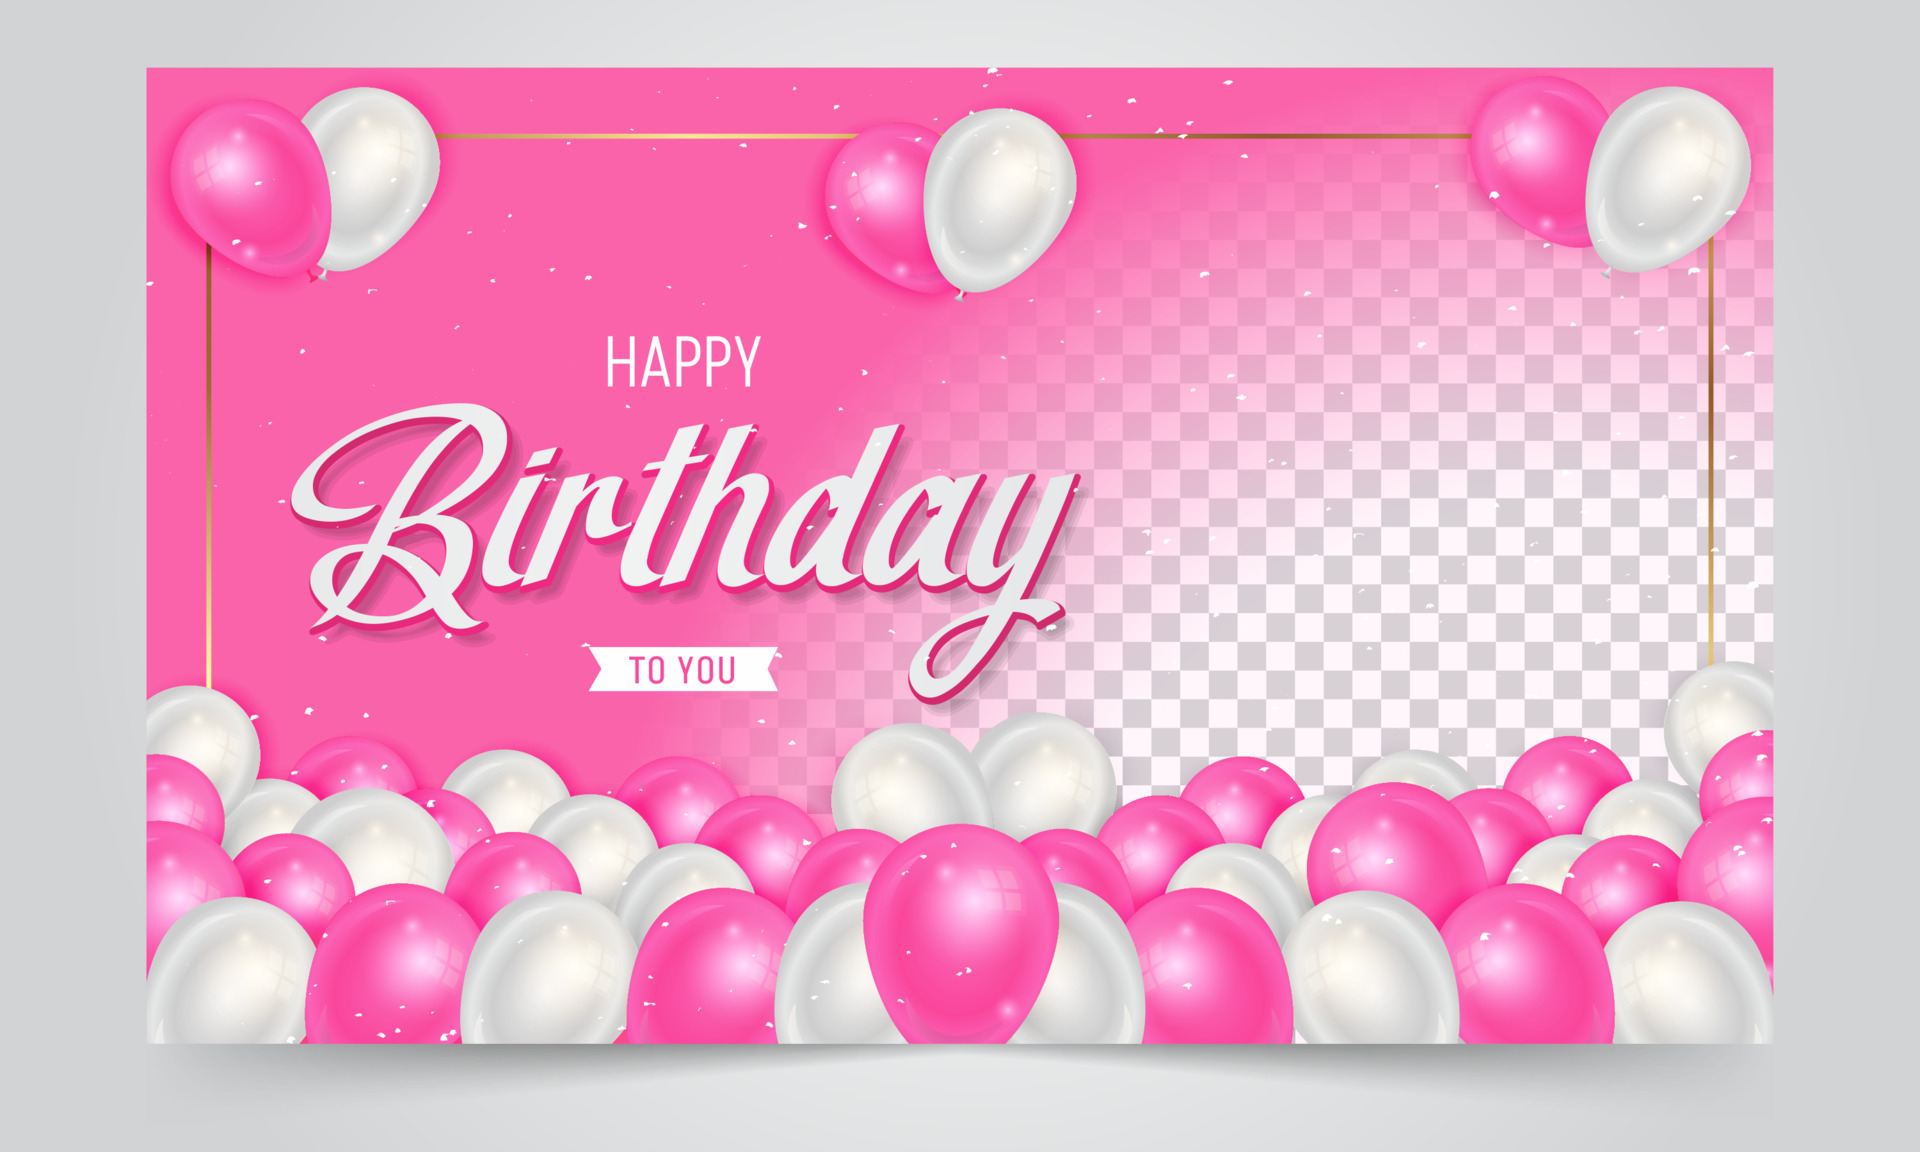 Sắc hồng là một trong những màu sắc được yêu thích nhất trong trang trí sinh nhật. Với phông nền sinh nhật hồng, bạn sẽ tạo được không gian trang trí đẹp mắt, ấm áp và đáng nhớ cho bữa tiệc sinh nhật của mình. Ngắm nhìn hình ảnh và cùng tận hưởng không khí sôi động và rực rỡ của bữa tiệc!